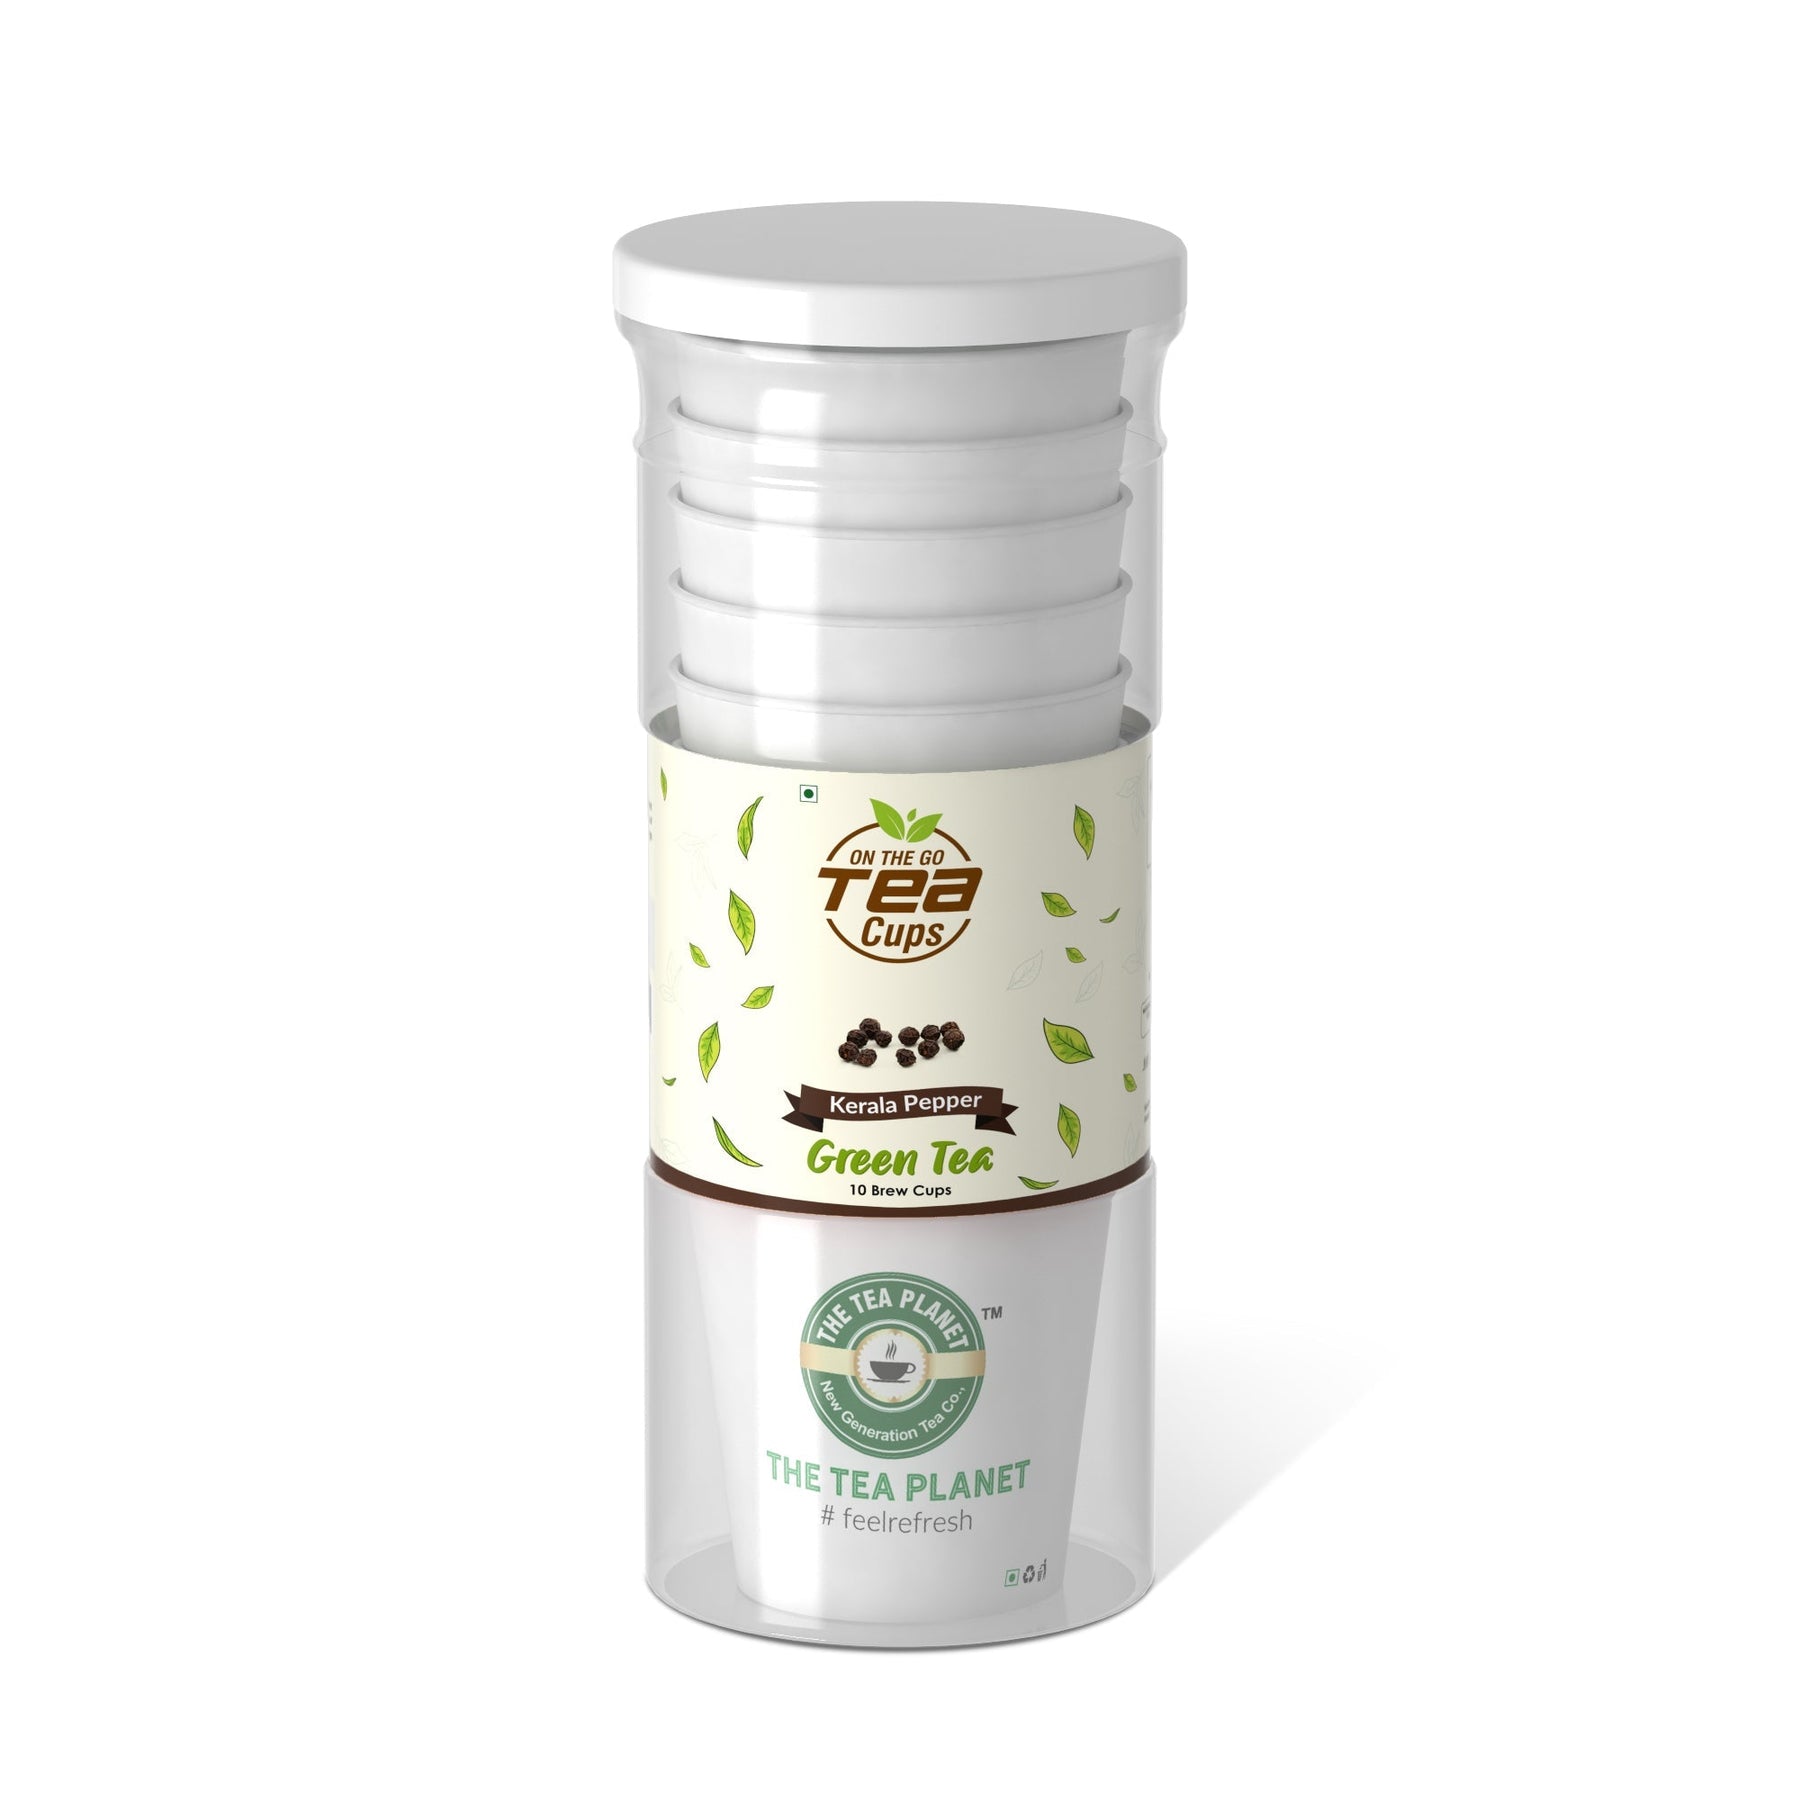 Kerala Pepper Instant Green Tea Brew Cup - 20 cups